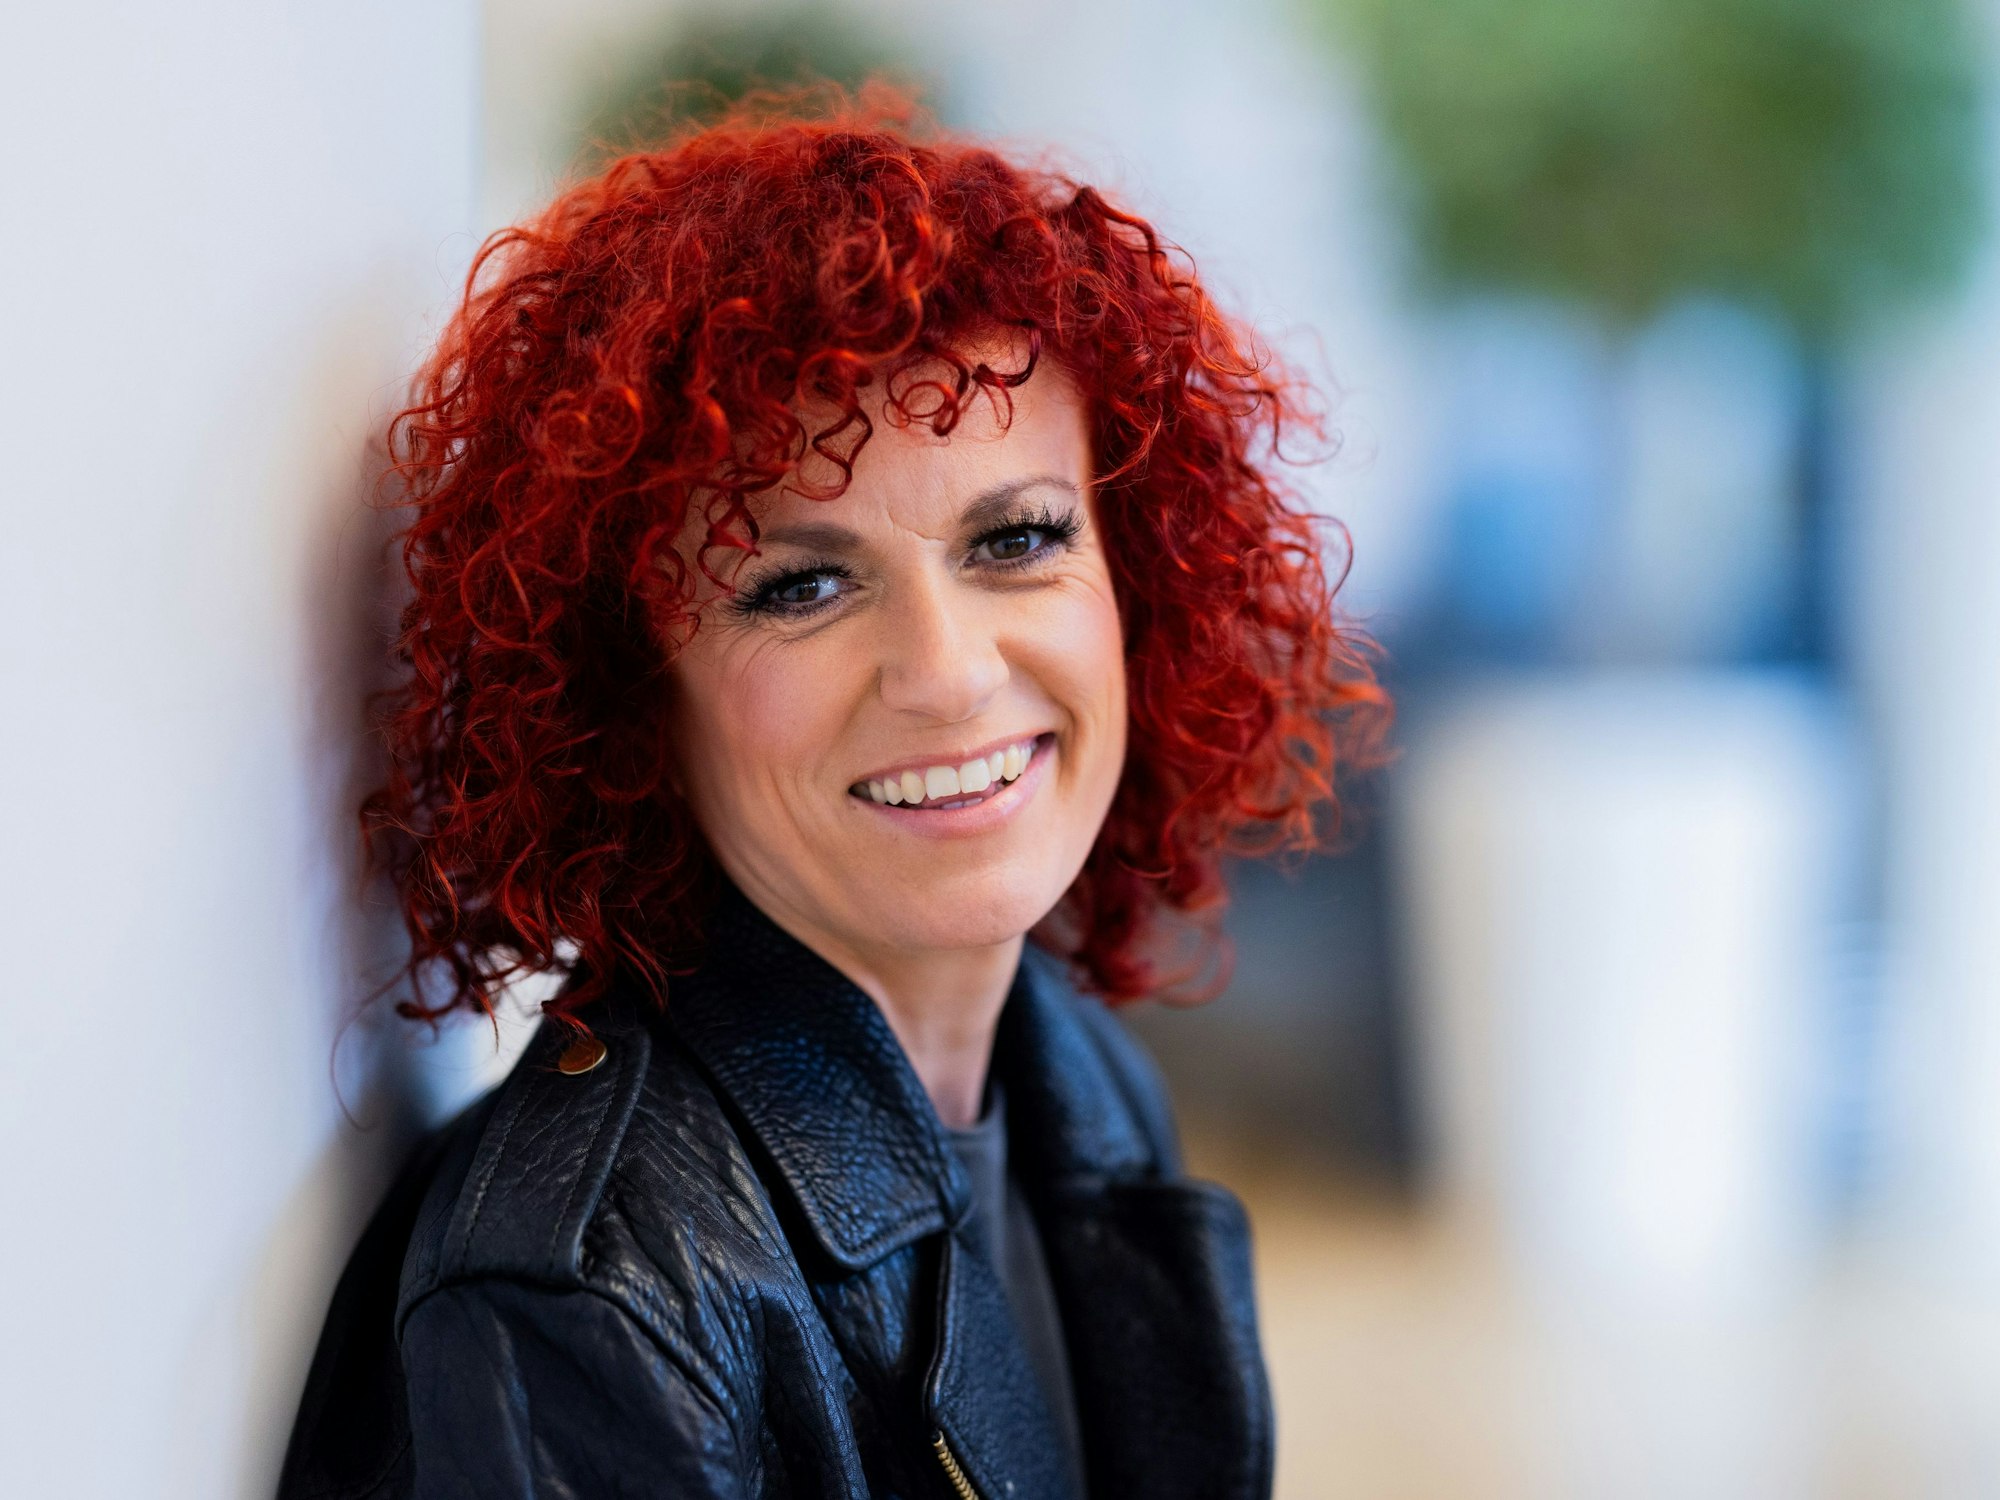 Lucy Diakovska, Siegerin der Jubiläumsstaffel des Dschungelcamps, steht im Sendezentrum von RTL Deutschland.